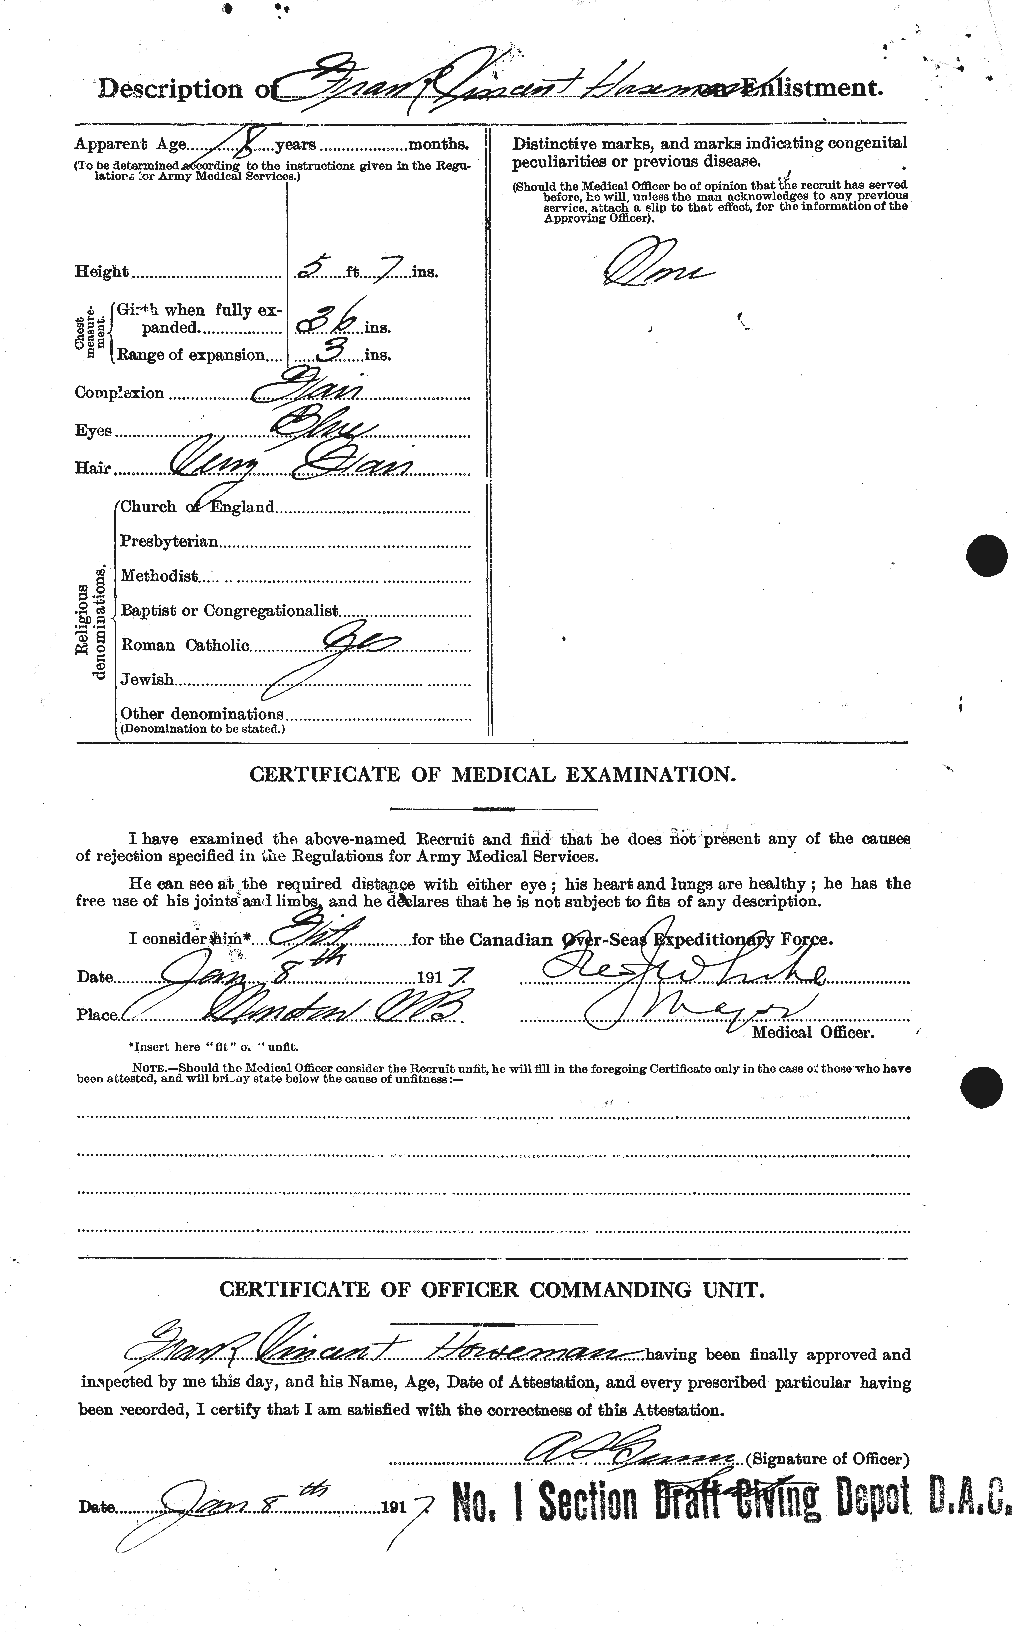 Dossiers du Personnel de la Première Guerre mondiale - CEC 401028b